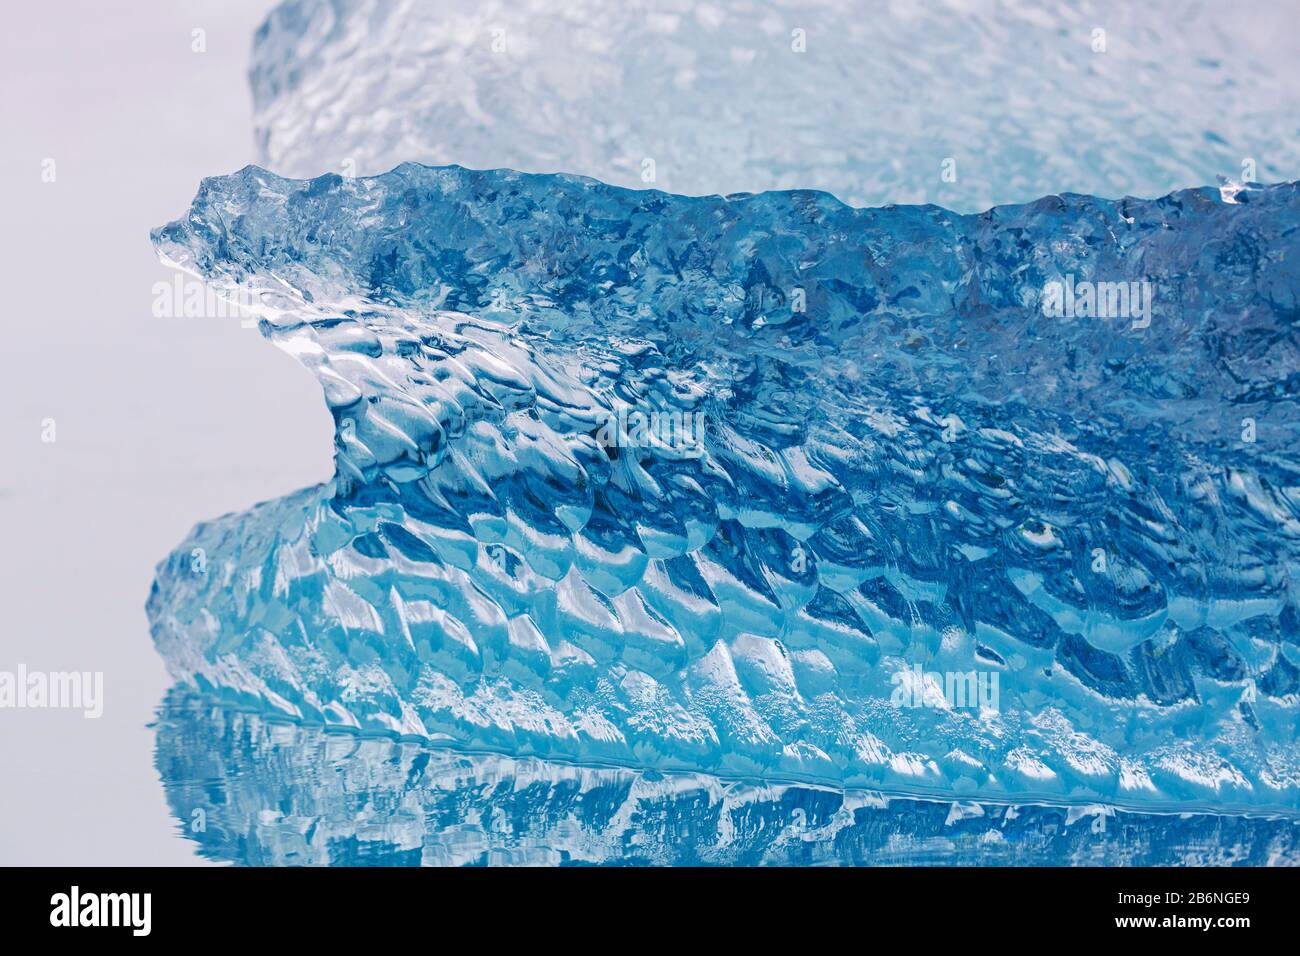 Abstraktes Muster in schmelzender Eisscholle/Eisberg, das Textur durch Schmelzwasser/Schmelzwasser zeigt Stockfoto